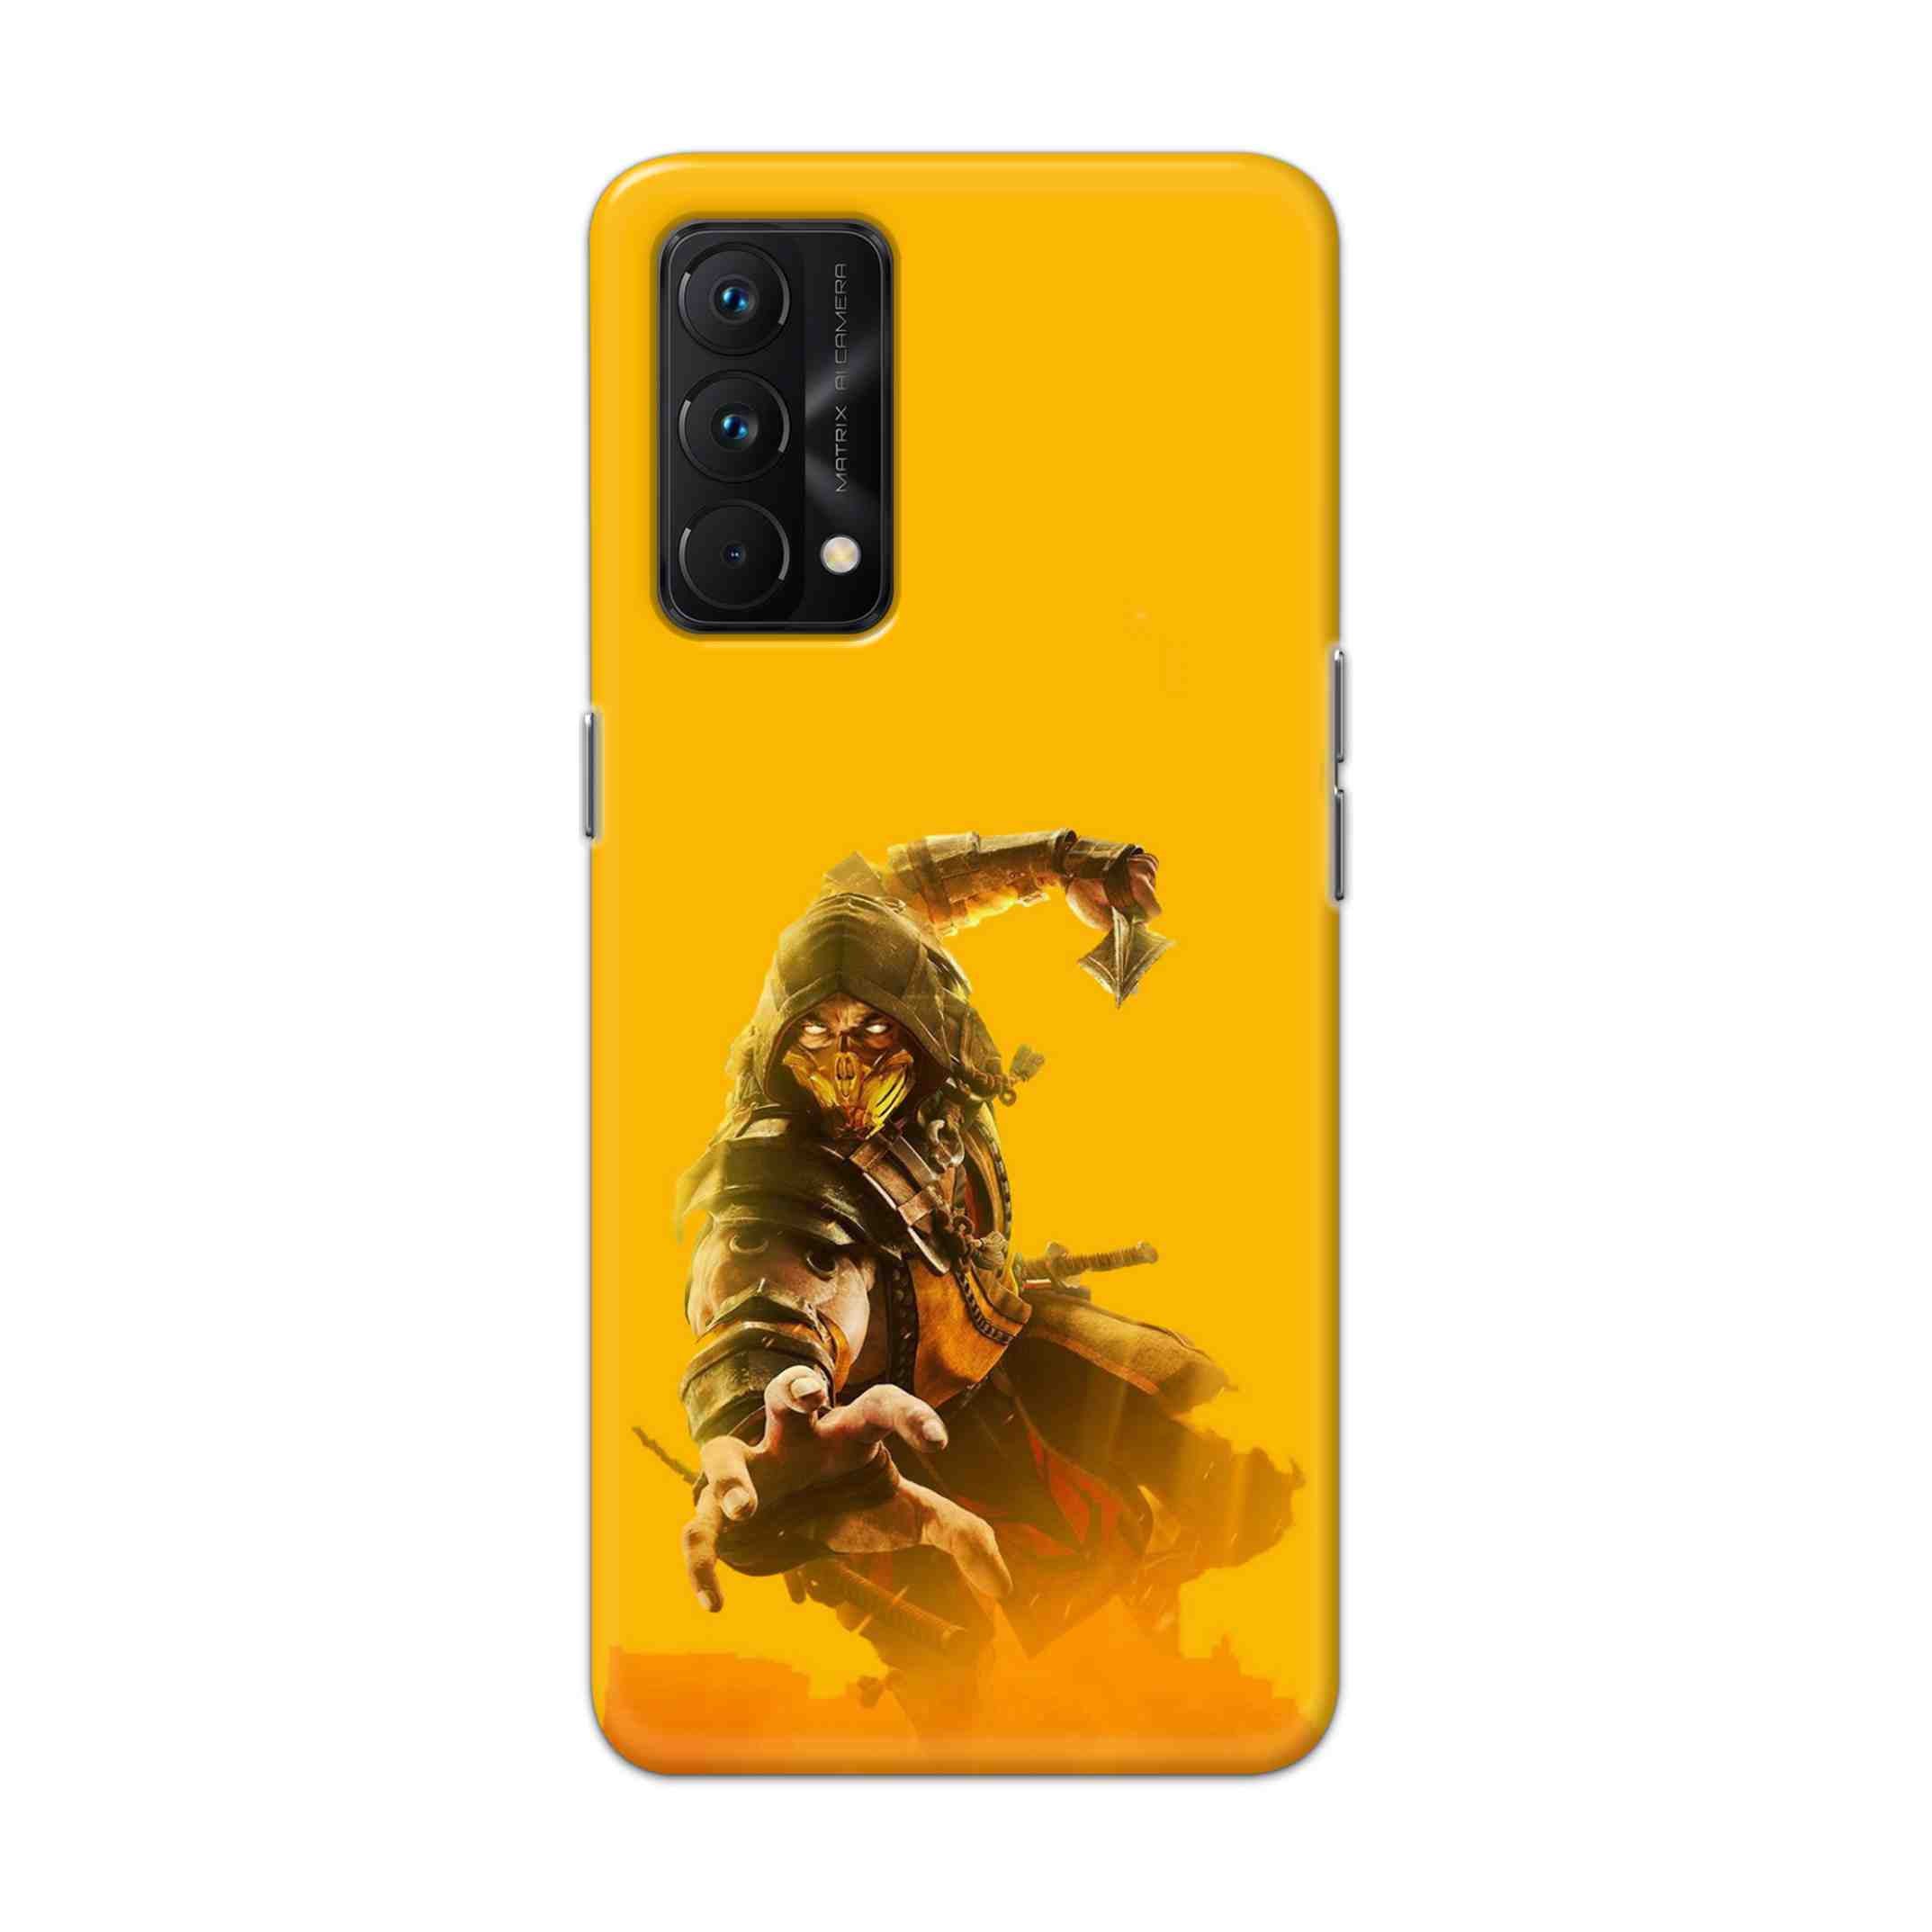 Buy Mortal Kombat Hard Back Mobile Phone Case Cover For Realme GT Master Online